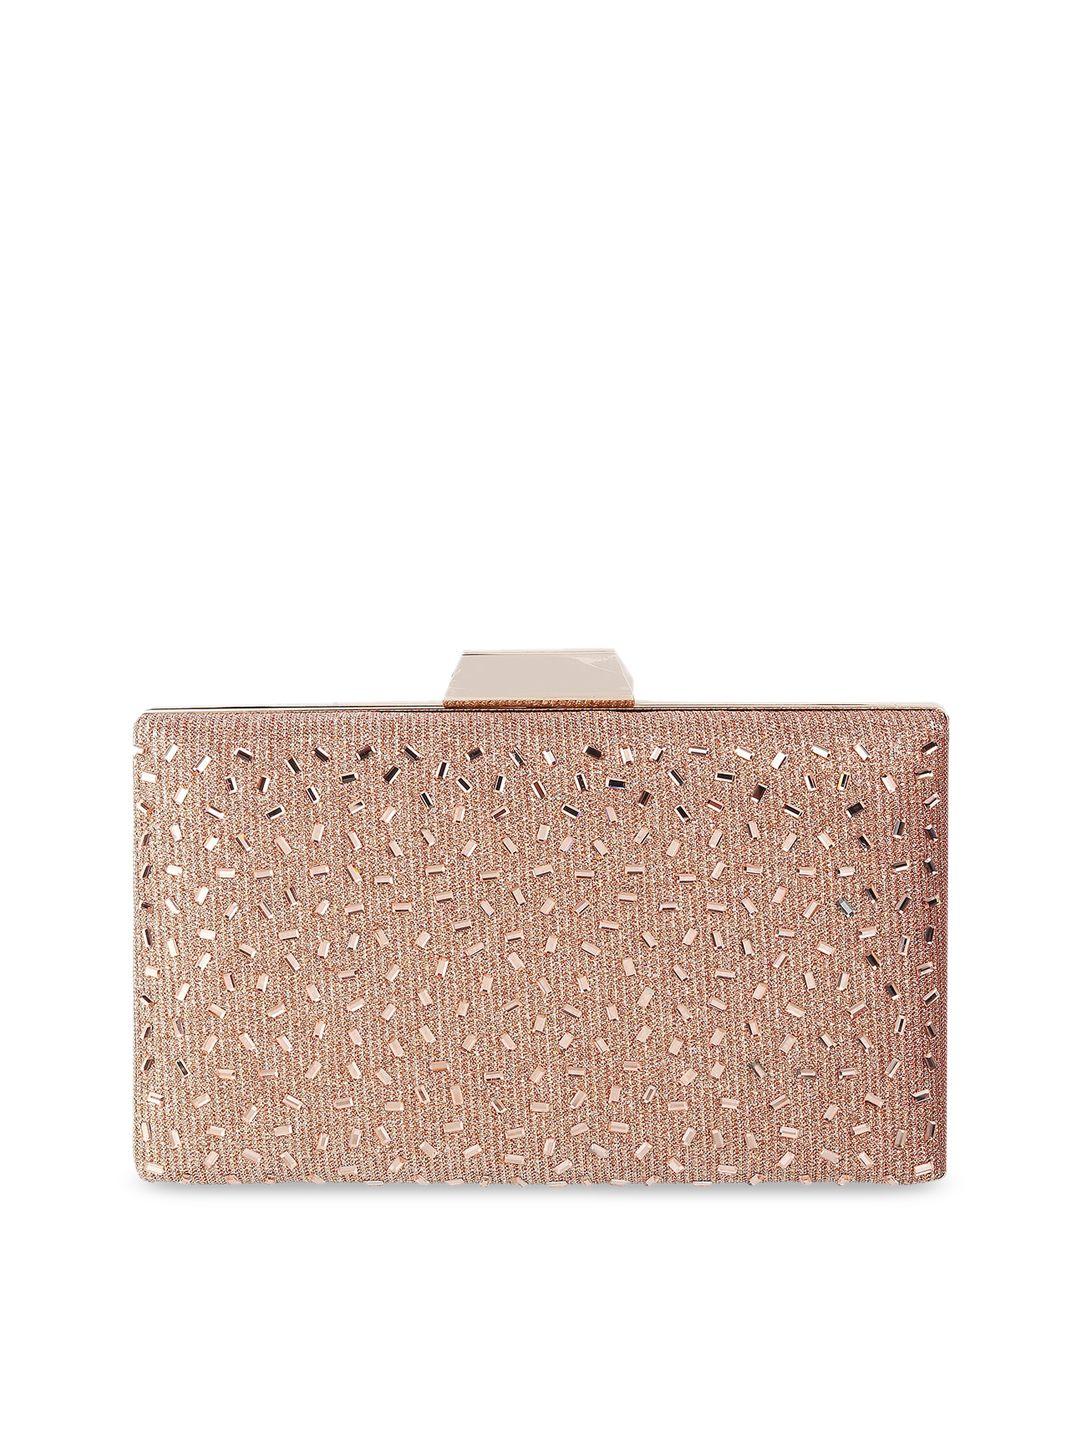 mochi-rose-gold-embellished-purse-clutch